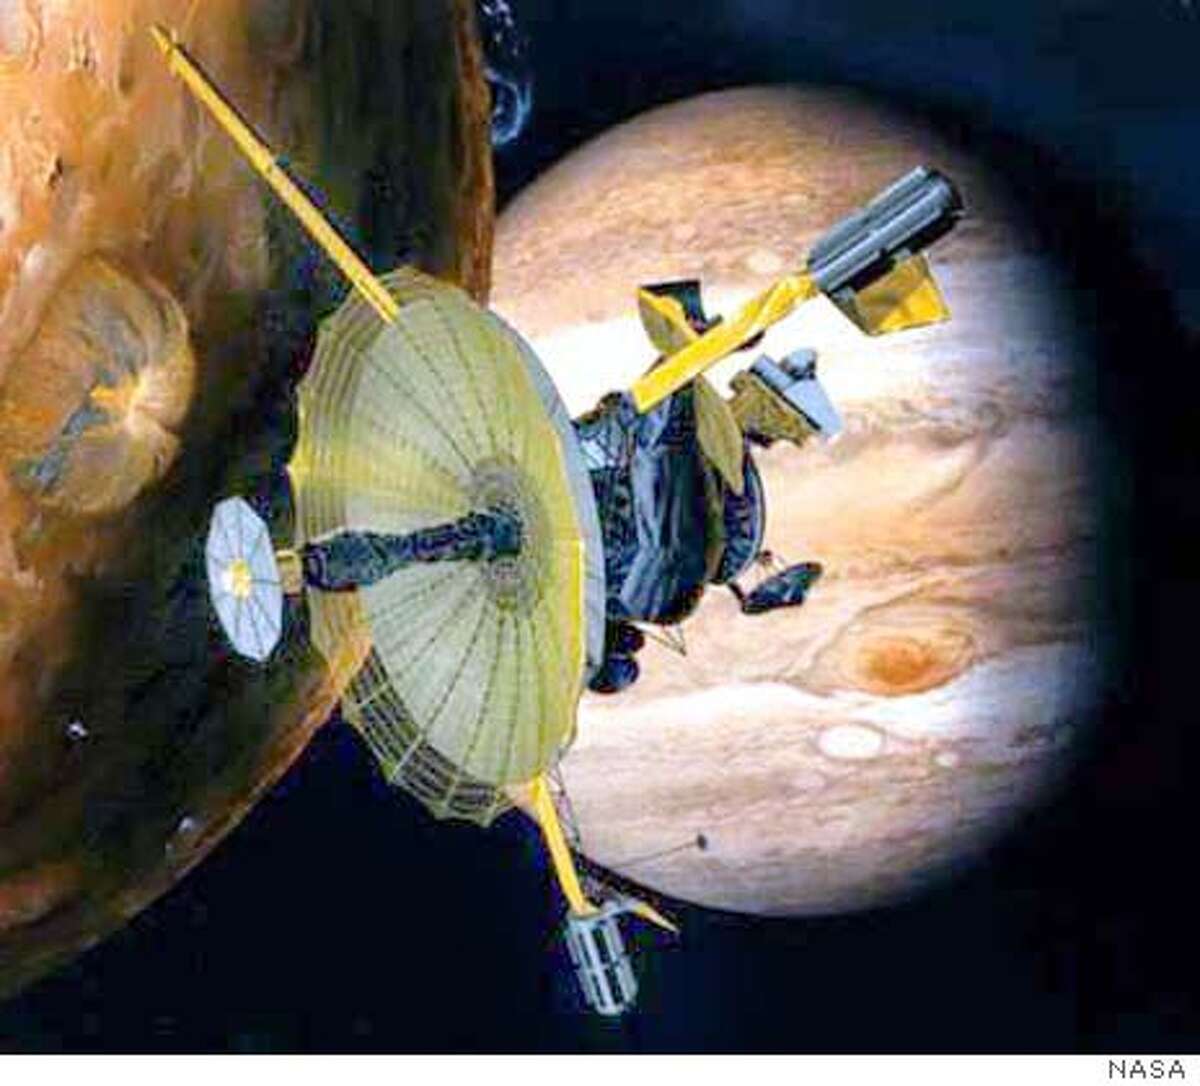 Galileo spacecraft closing in for death plunge to Jupiter / 3 billion-mile, 14-year trek to meet fiery climax Sunday